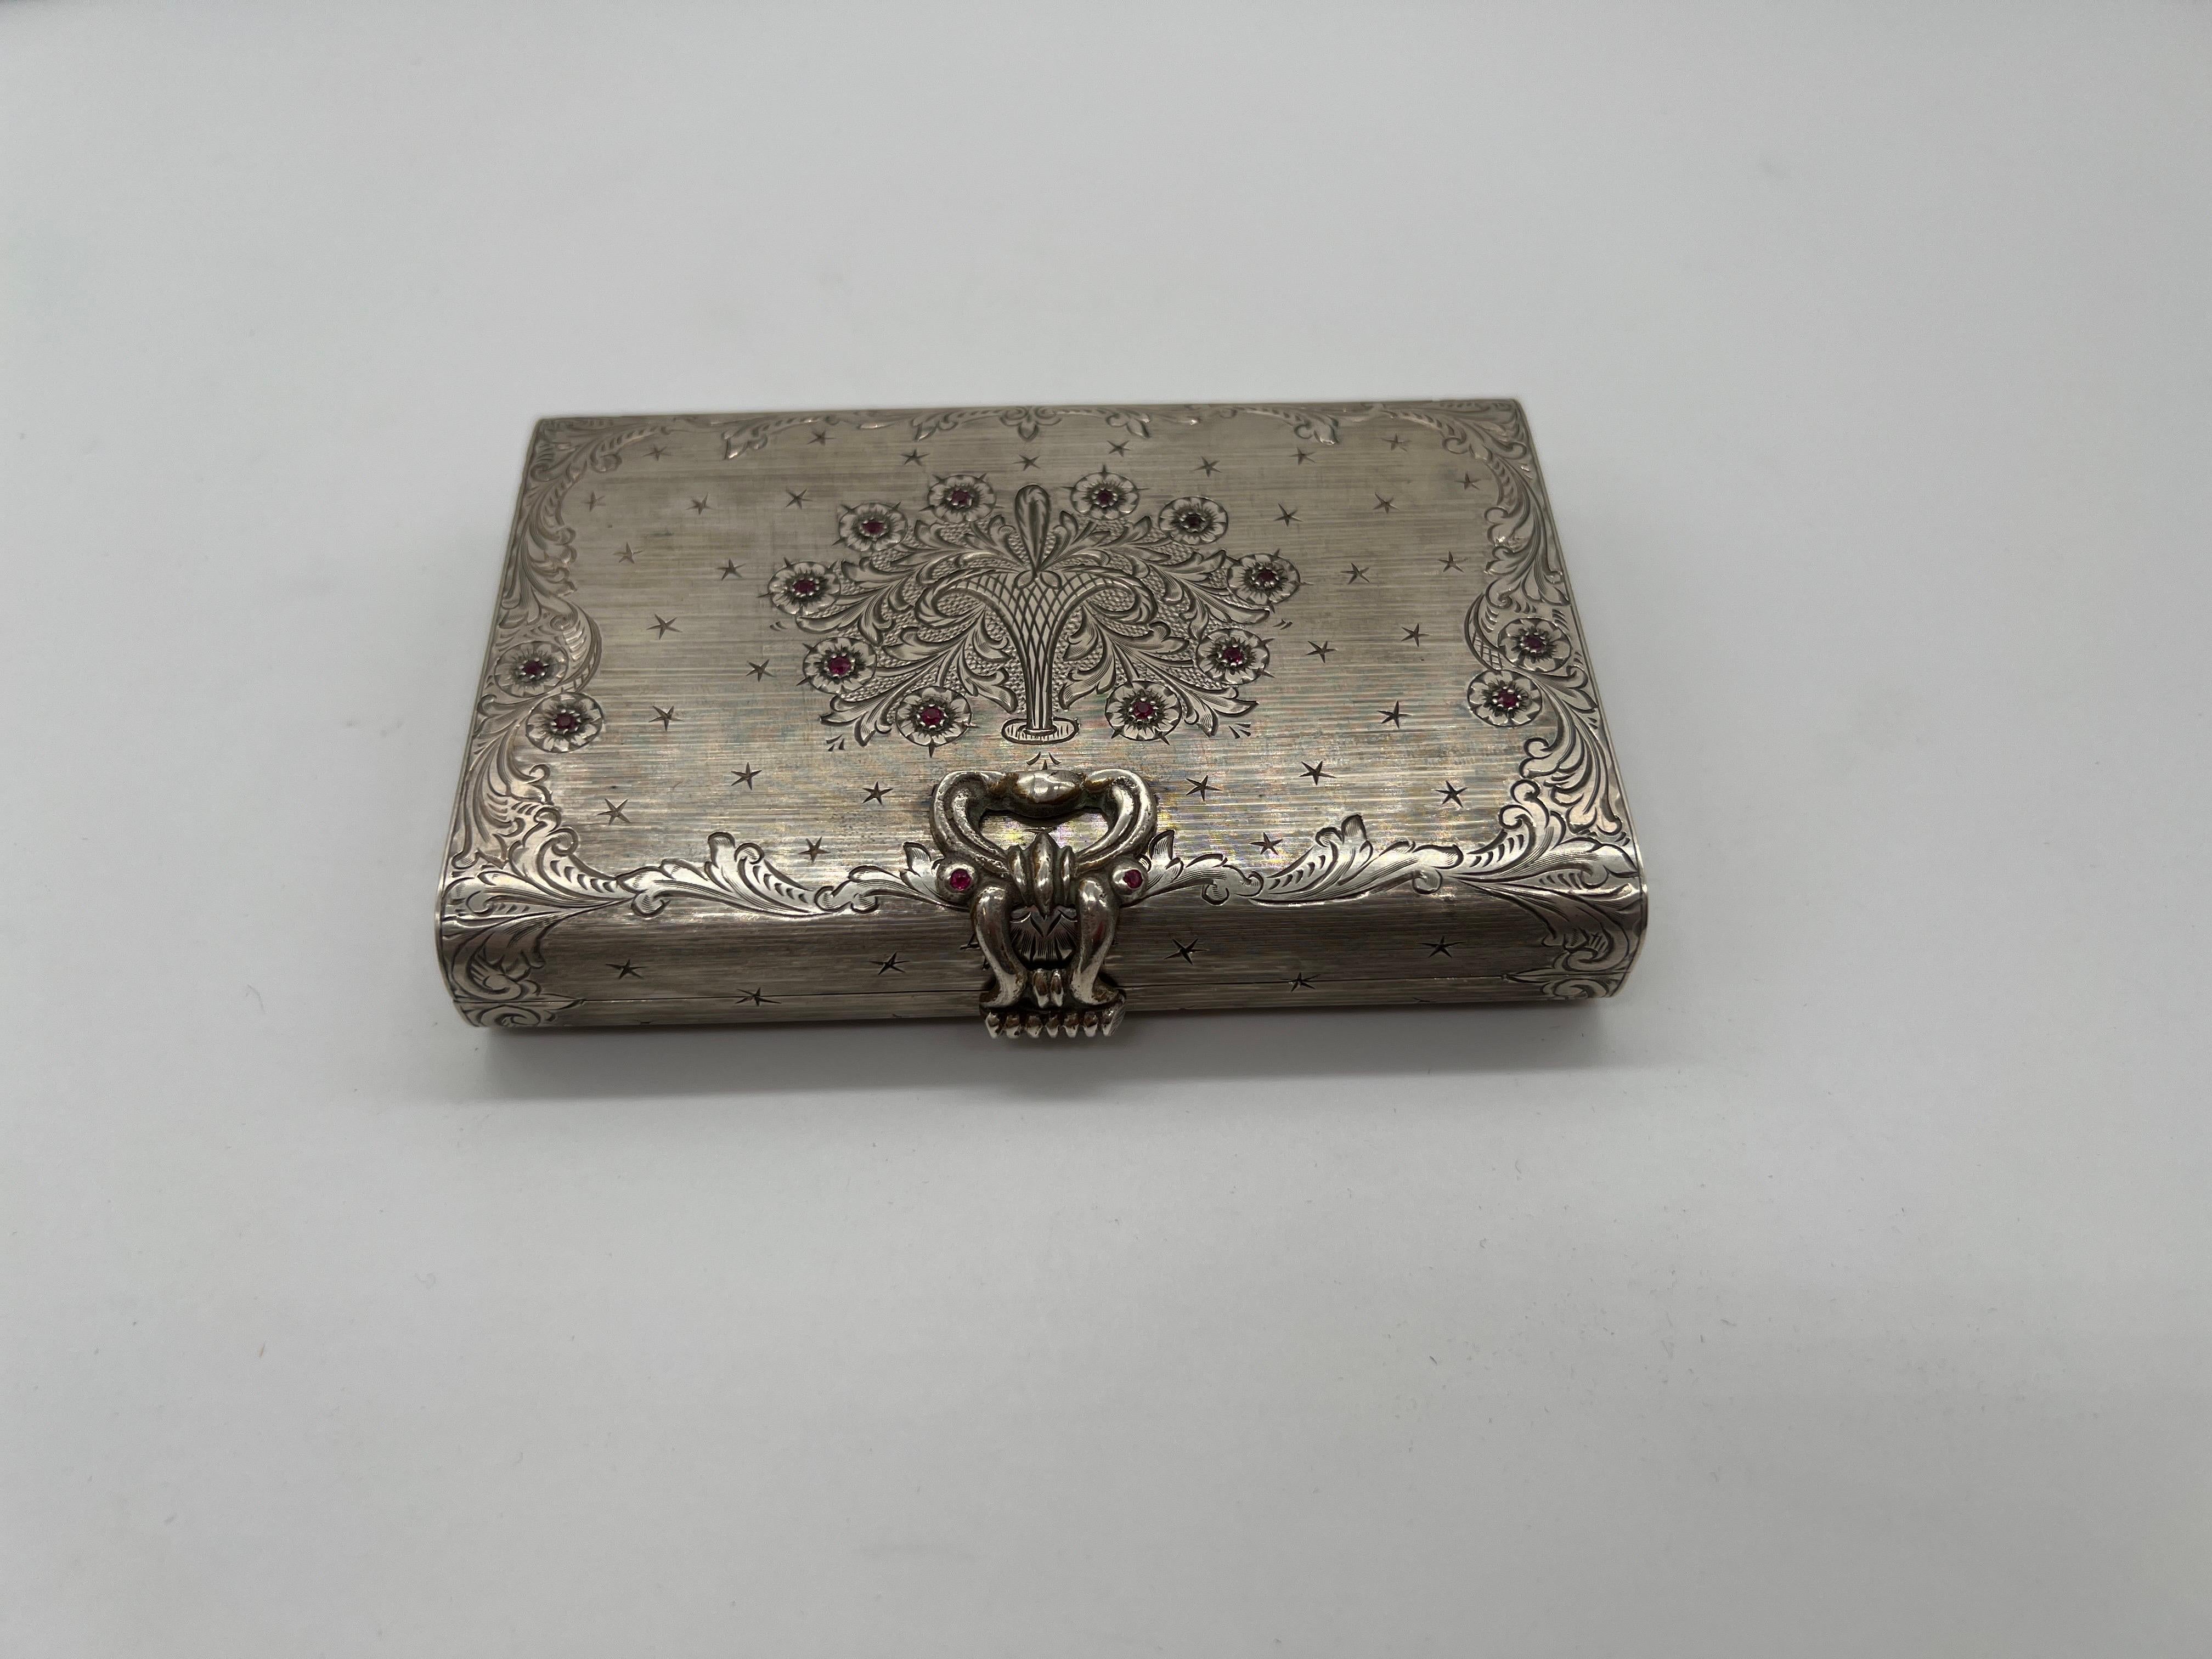 Italienisch, 20. Jahrhundert.

Eine schöne italienische 800 Silber miniadiere oder Make-up kompakt Fall. Das Gehäuse ist oben mit Rubinen besetzt, die das handziselierte Blumendekor betonen. Auch die Seiten und die Rückseite sind mit feinen Details